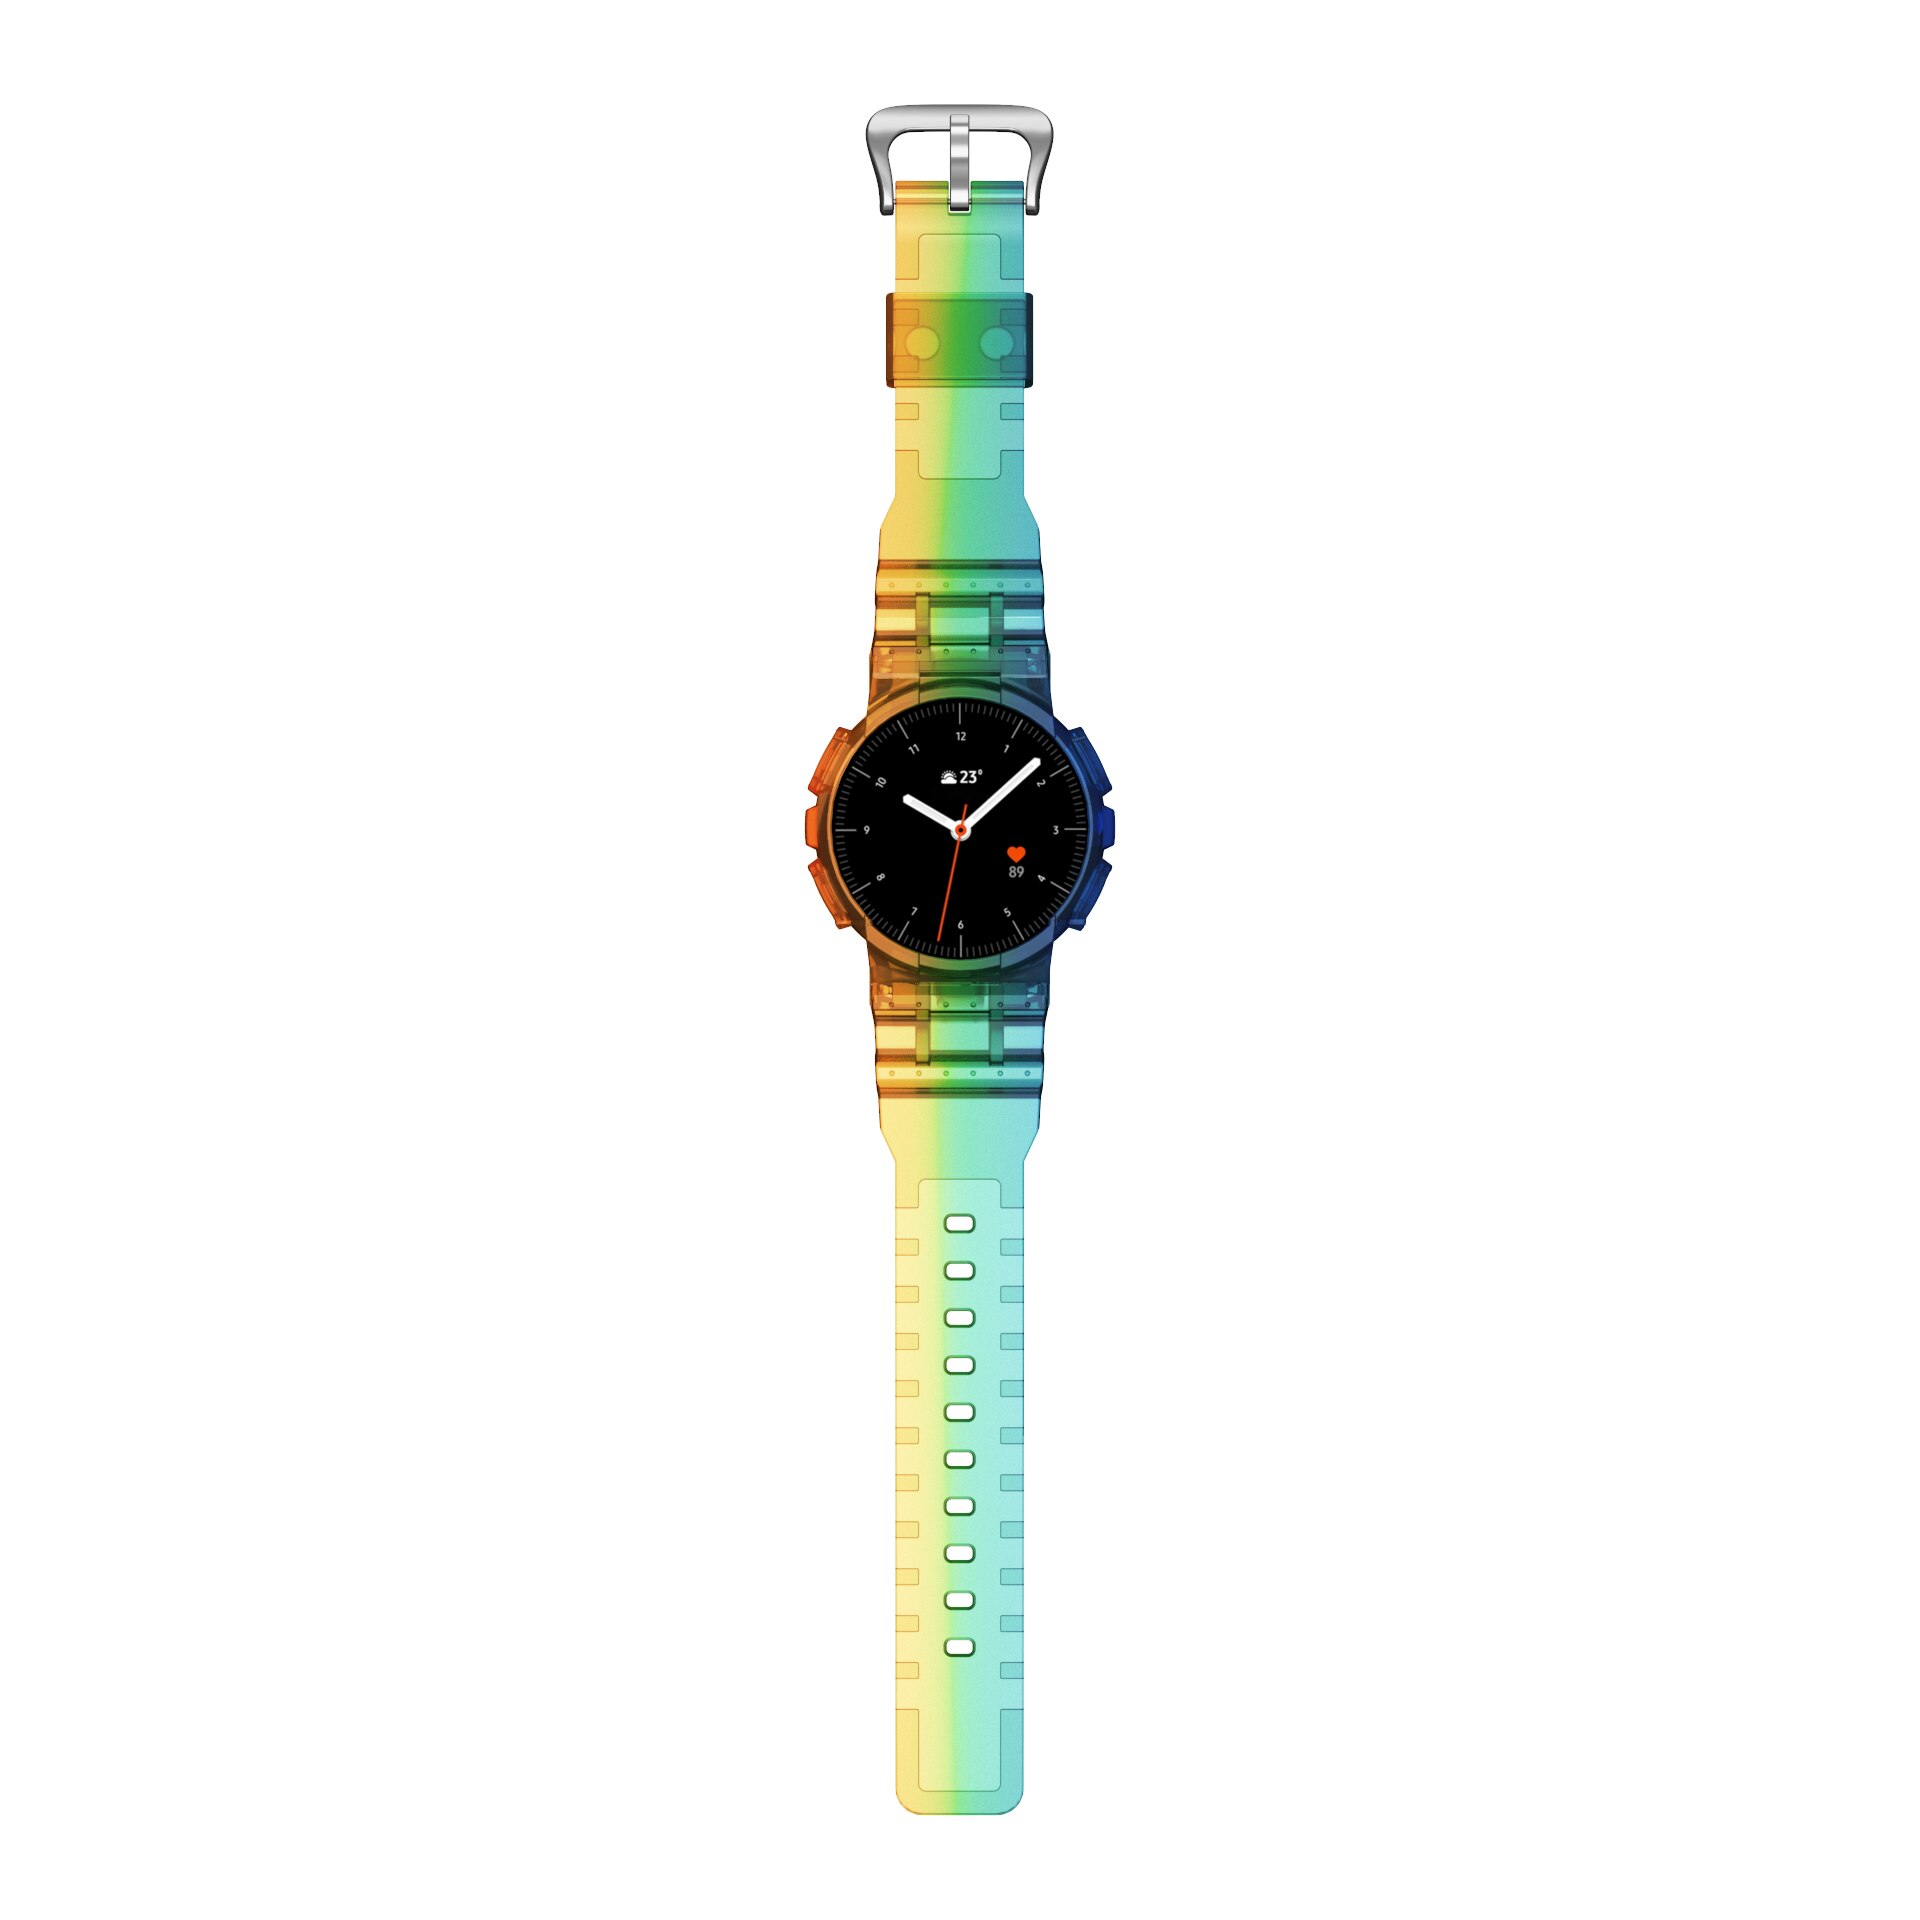 Anbest Duidelijk Horloge Band Met Beschermende Case Vervanging Voor Samsung Galaxy Actieve 2 44Mm Soft Tpu Voor Galaxy actieve 2: Multicolor